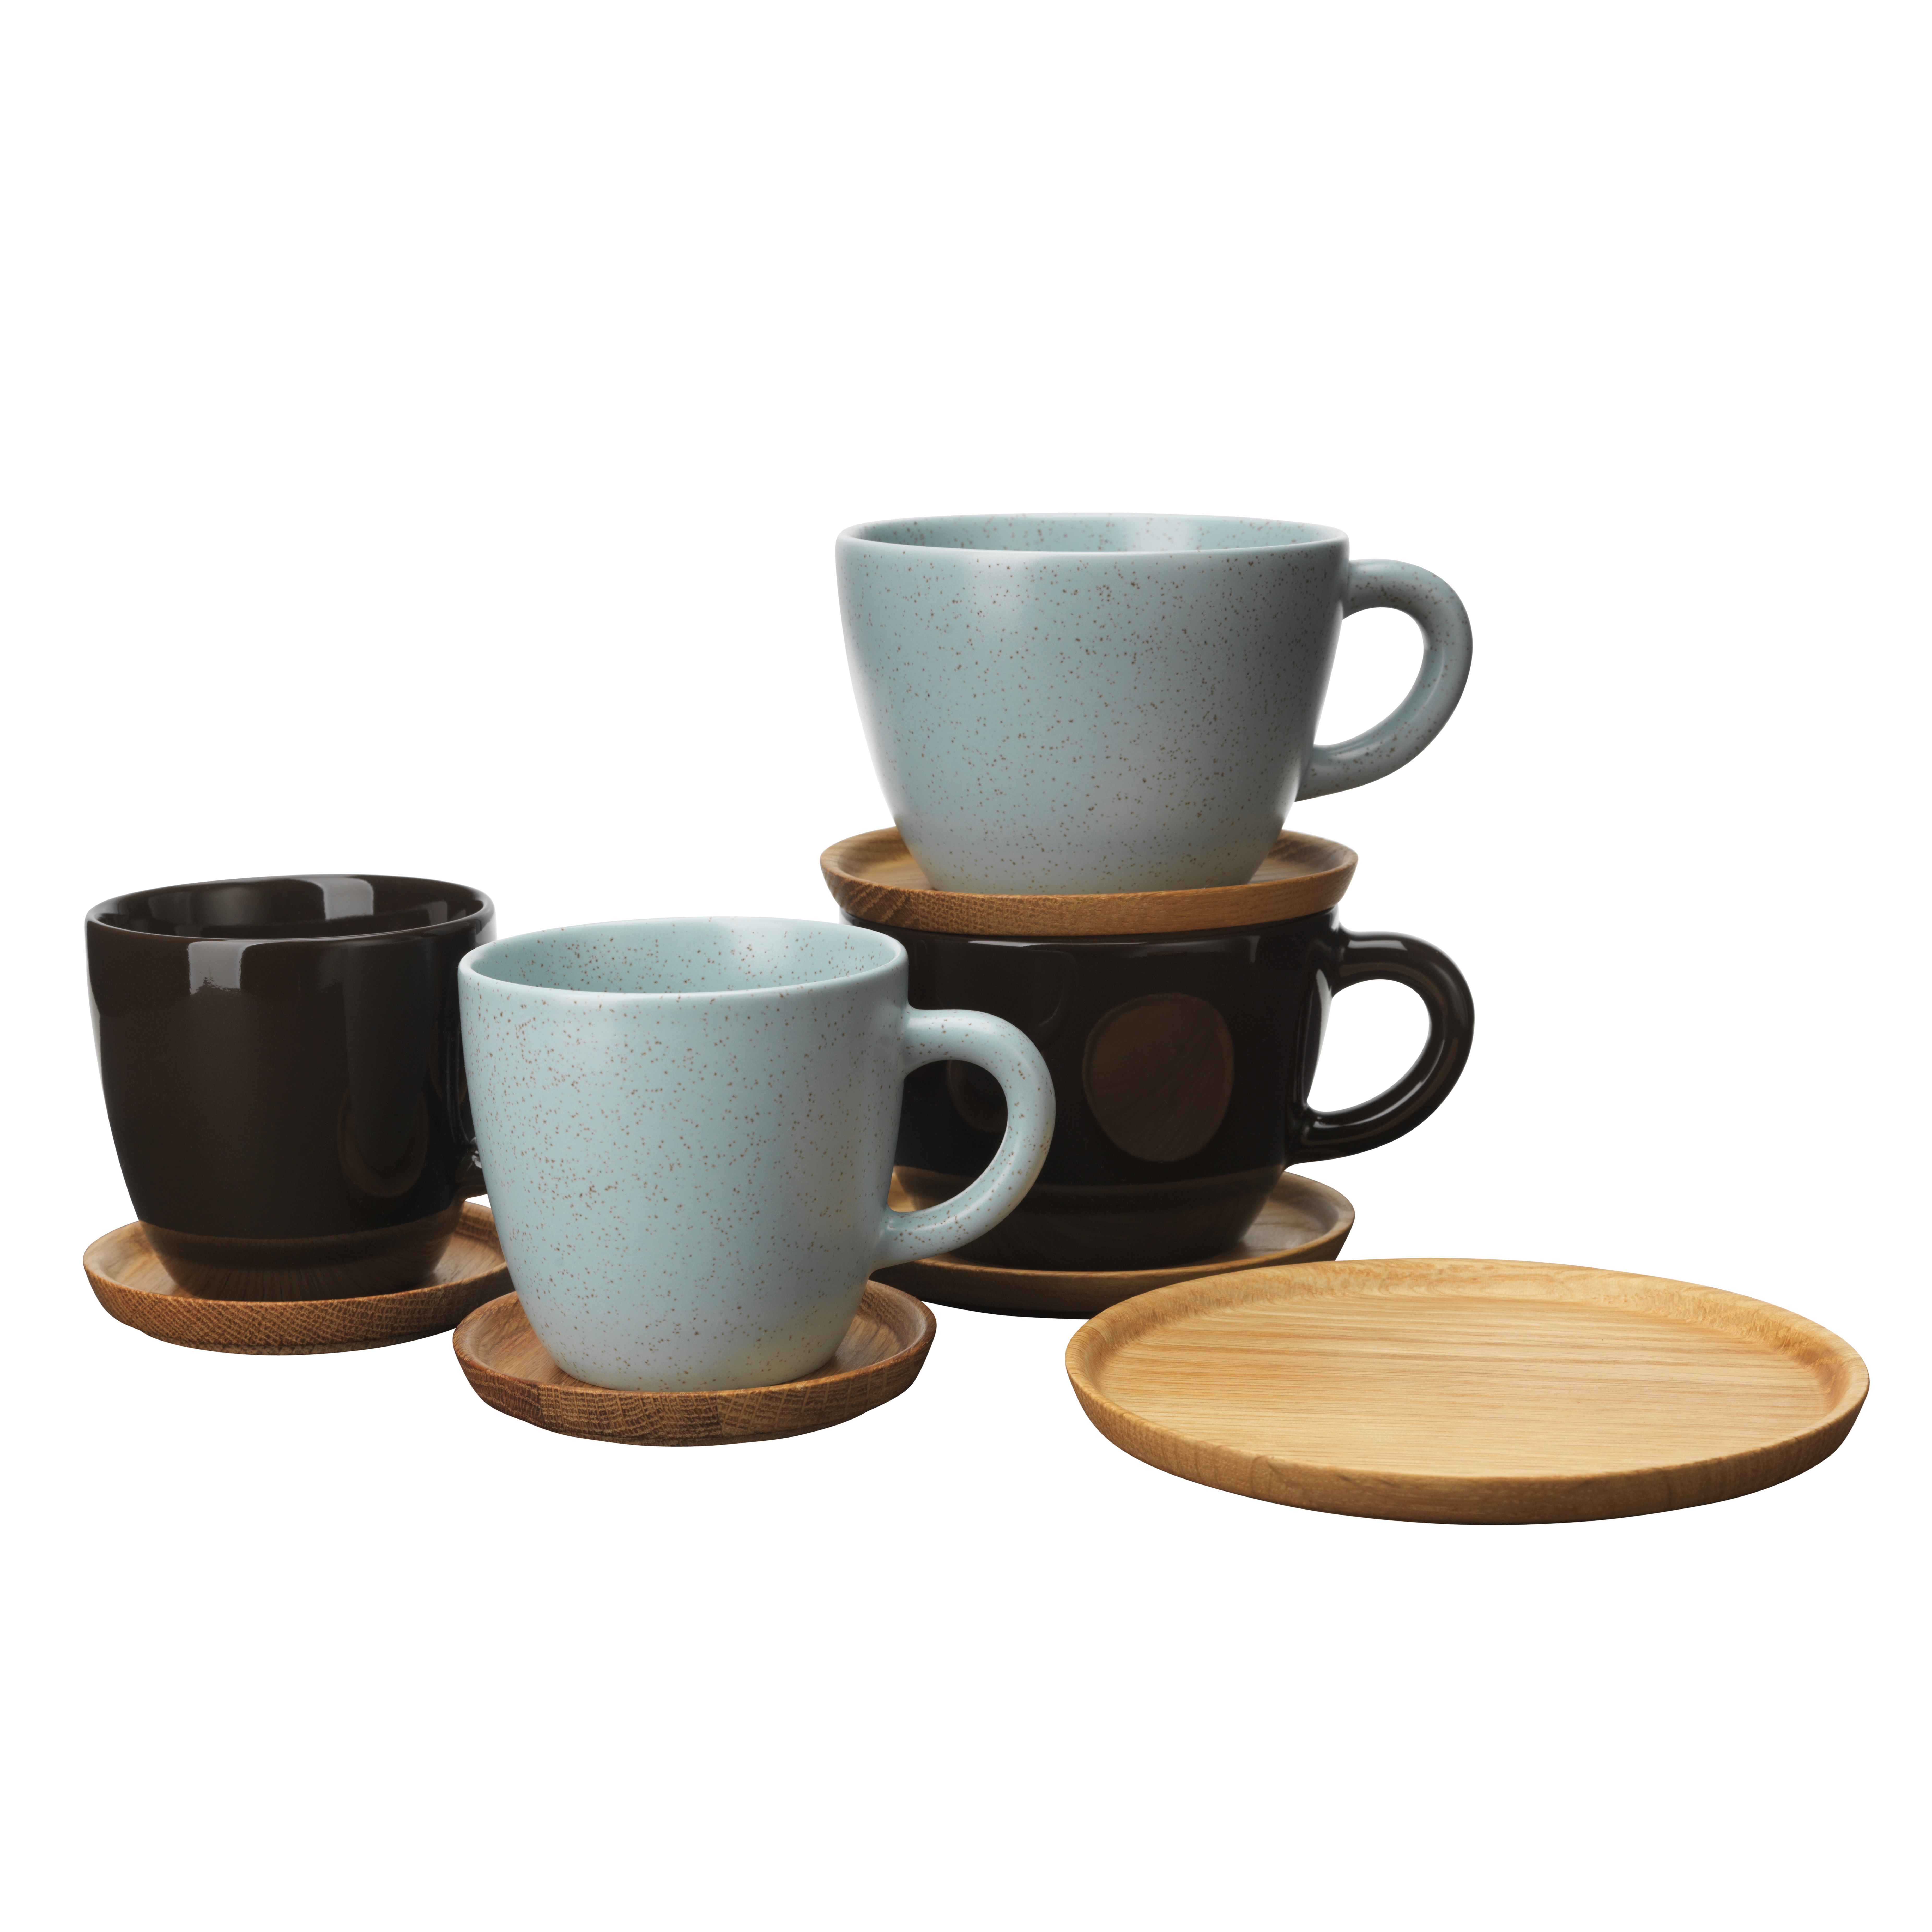 New lot of TEN Crate Barrel Hoganas Keramik NILLSON Coffee Cups Mugs 12oz 